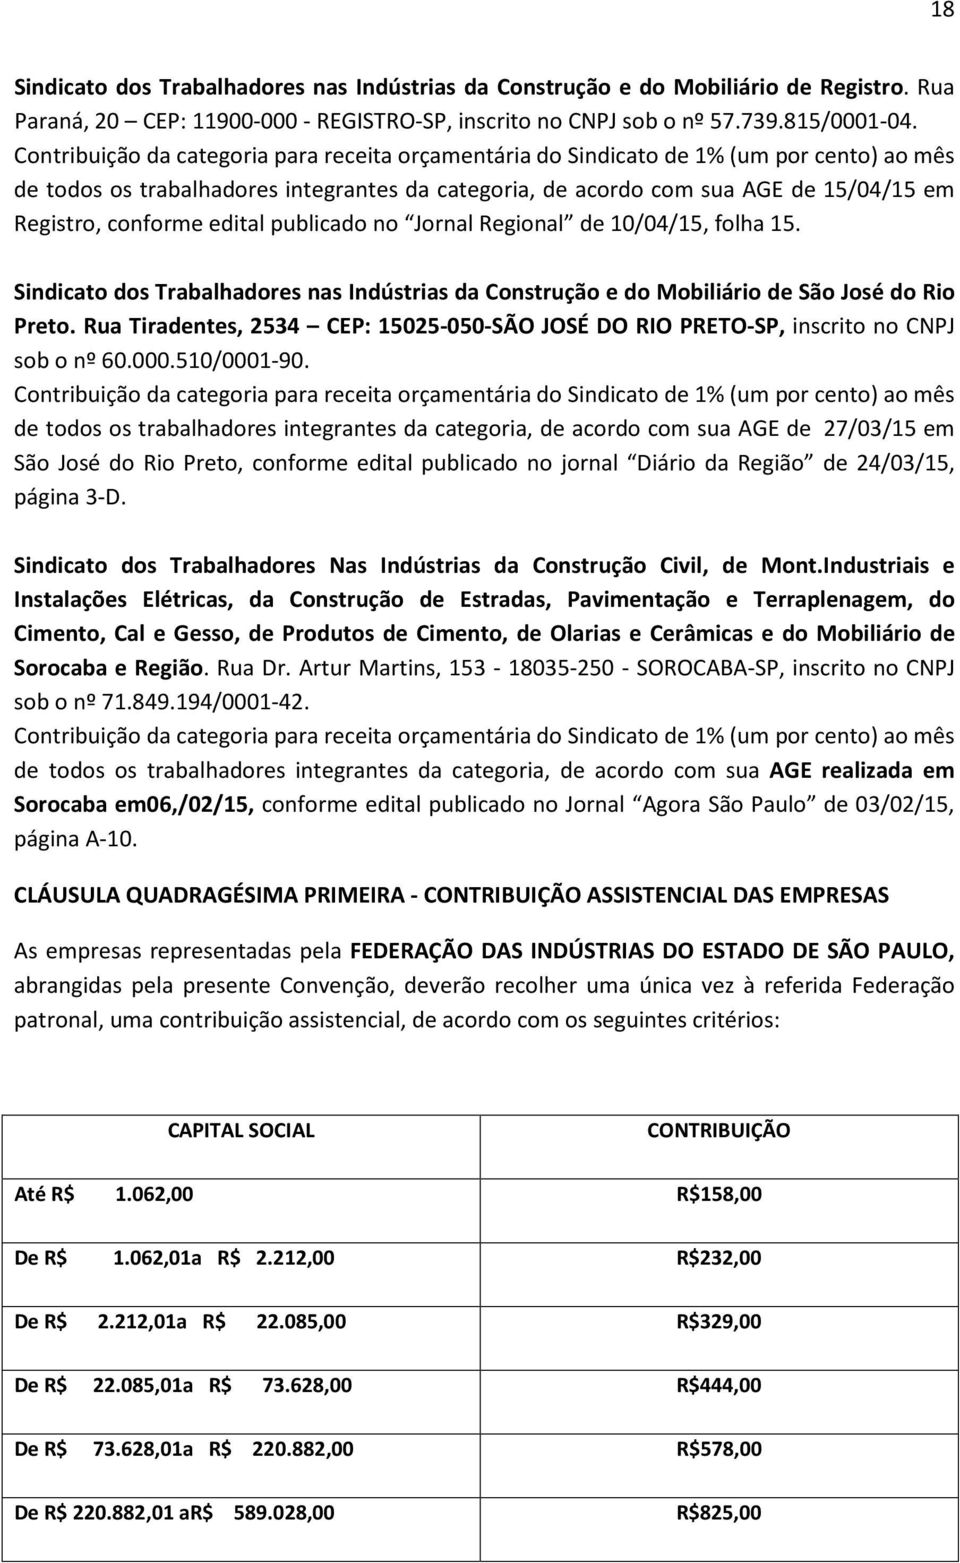 Sindicato dos Trabalhadores nas Indústrias da Construção e do Mobiliário de São José do Rio Preto. Rua Tiradentes, 2534 CEP: 15025-050-SÃO JOSÉ DO RIO PRETO-SP, inscrito no CNPJ sob o nº 60.000.